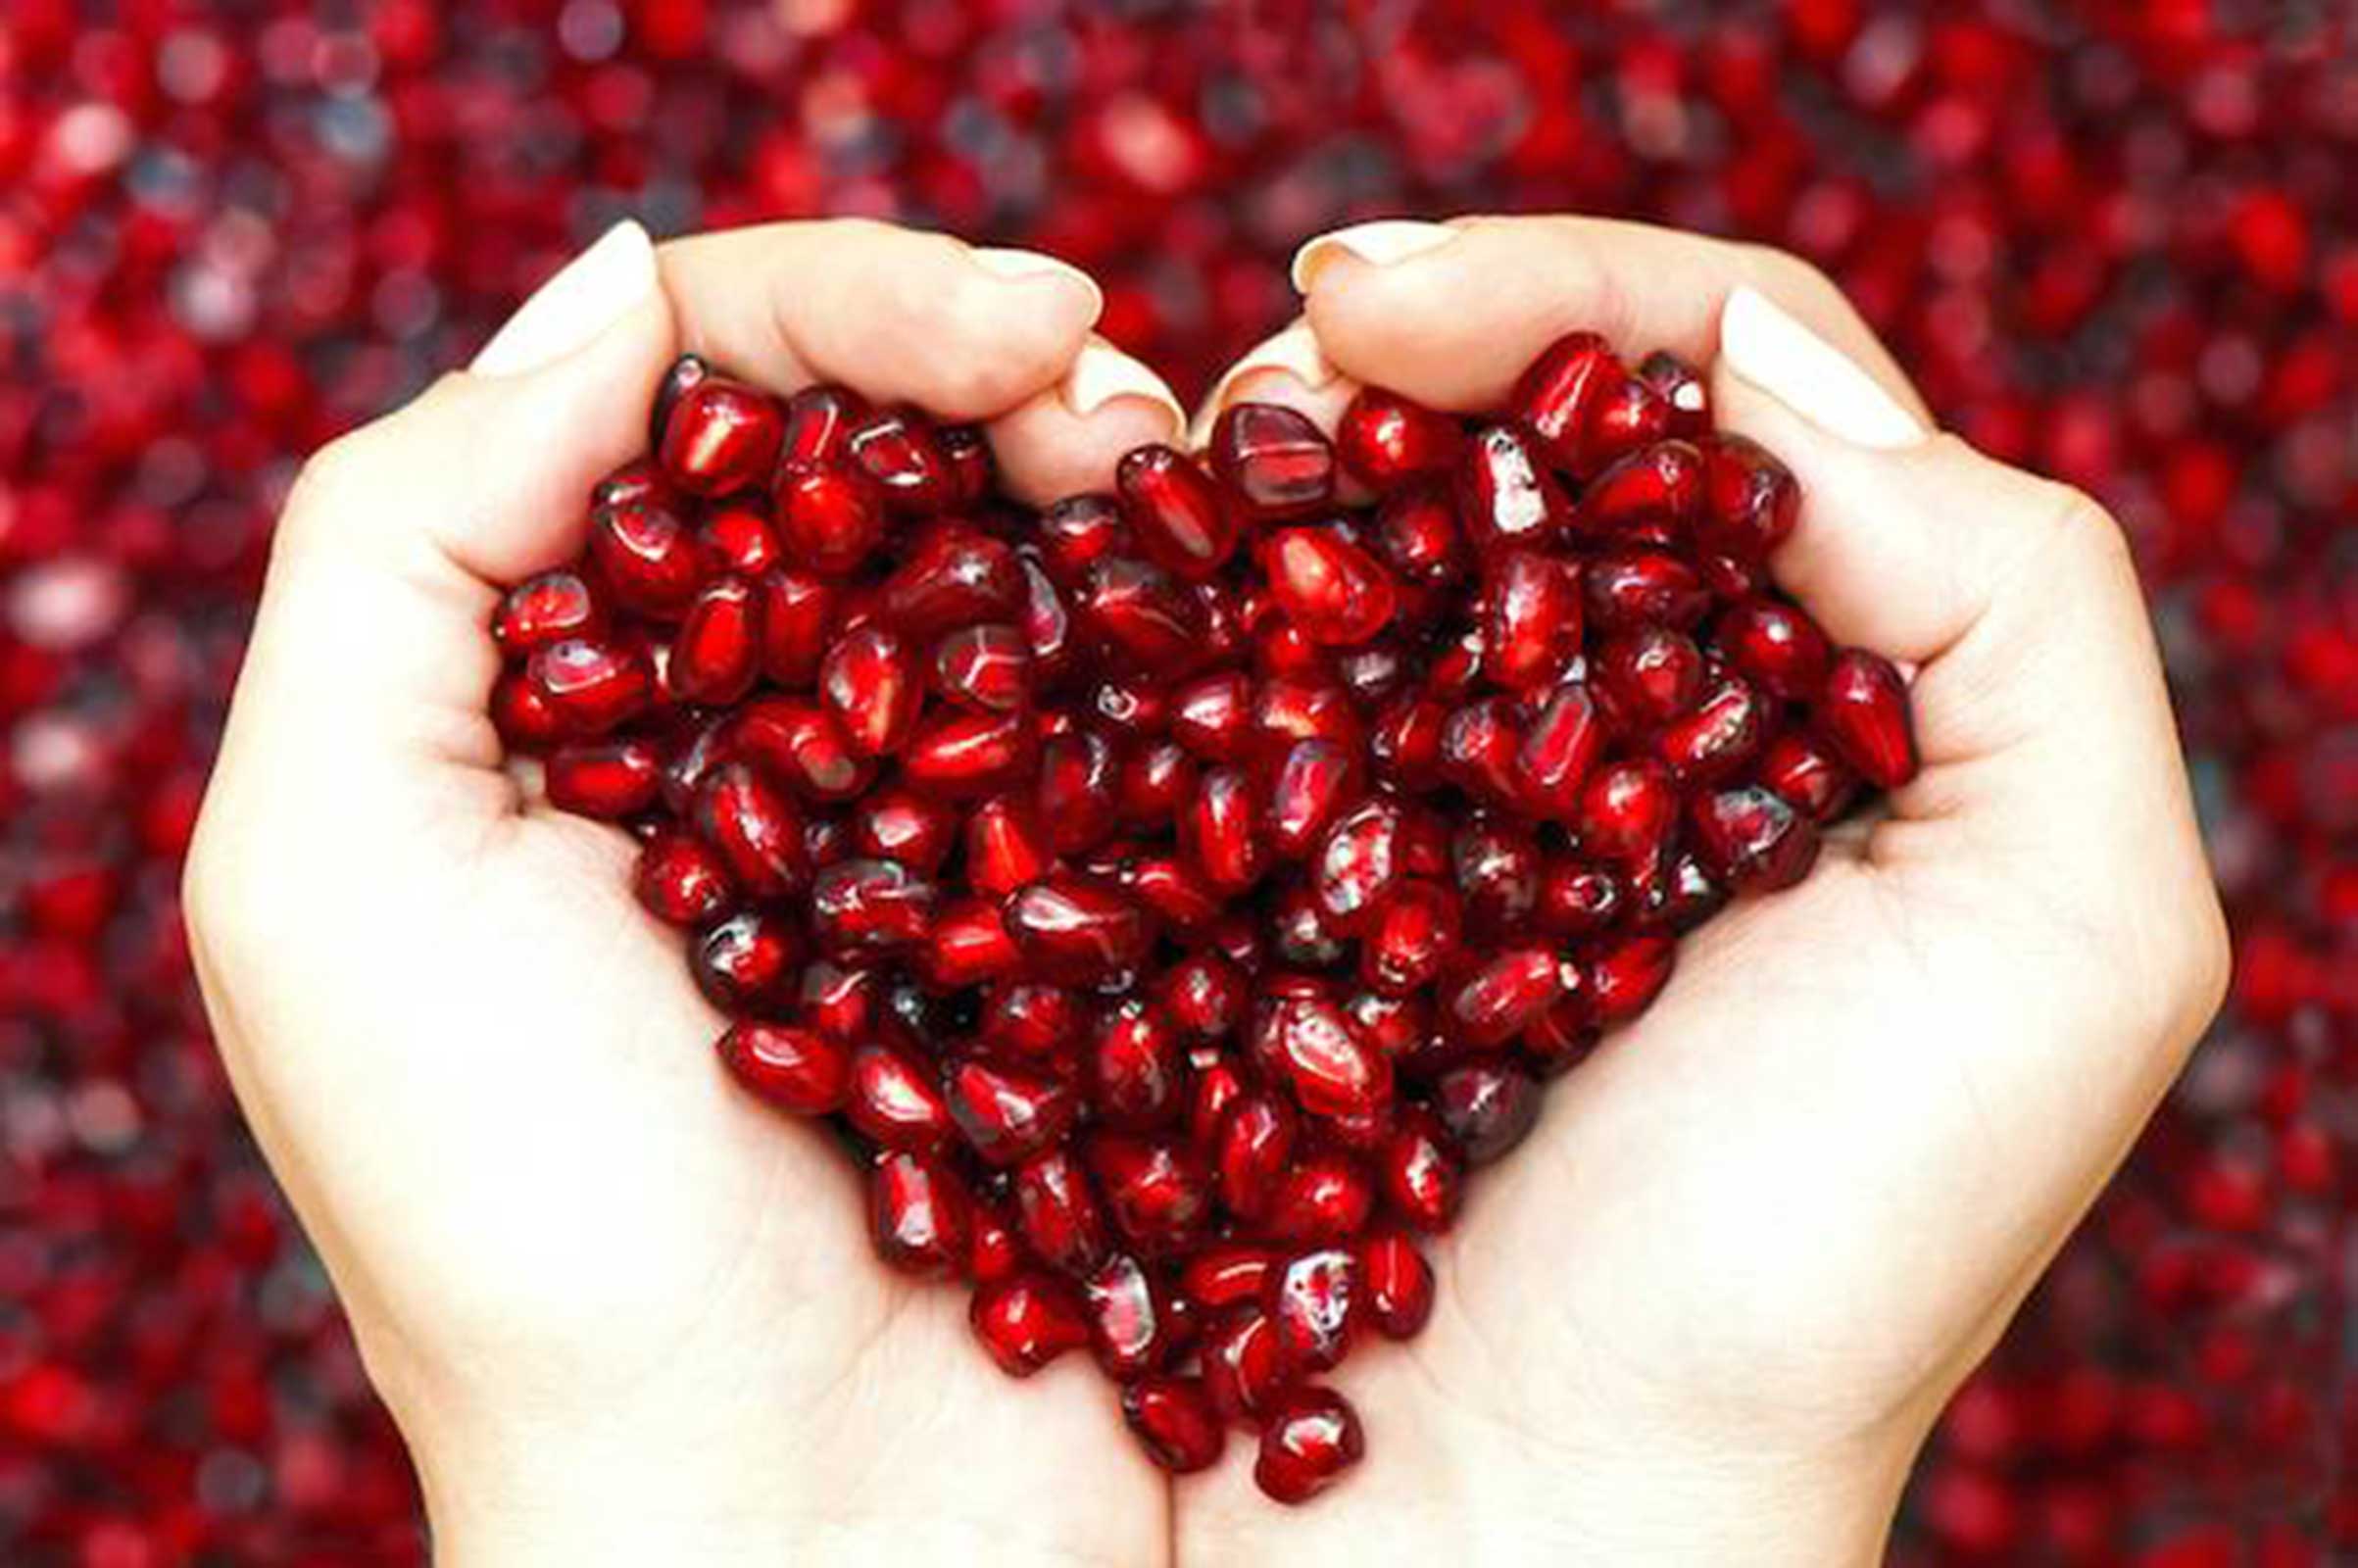 ضربان سلامتی - مواد غذایی مفید برای پاکسازی قلب و عروق